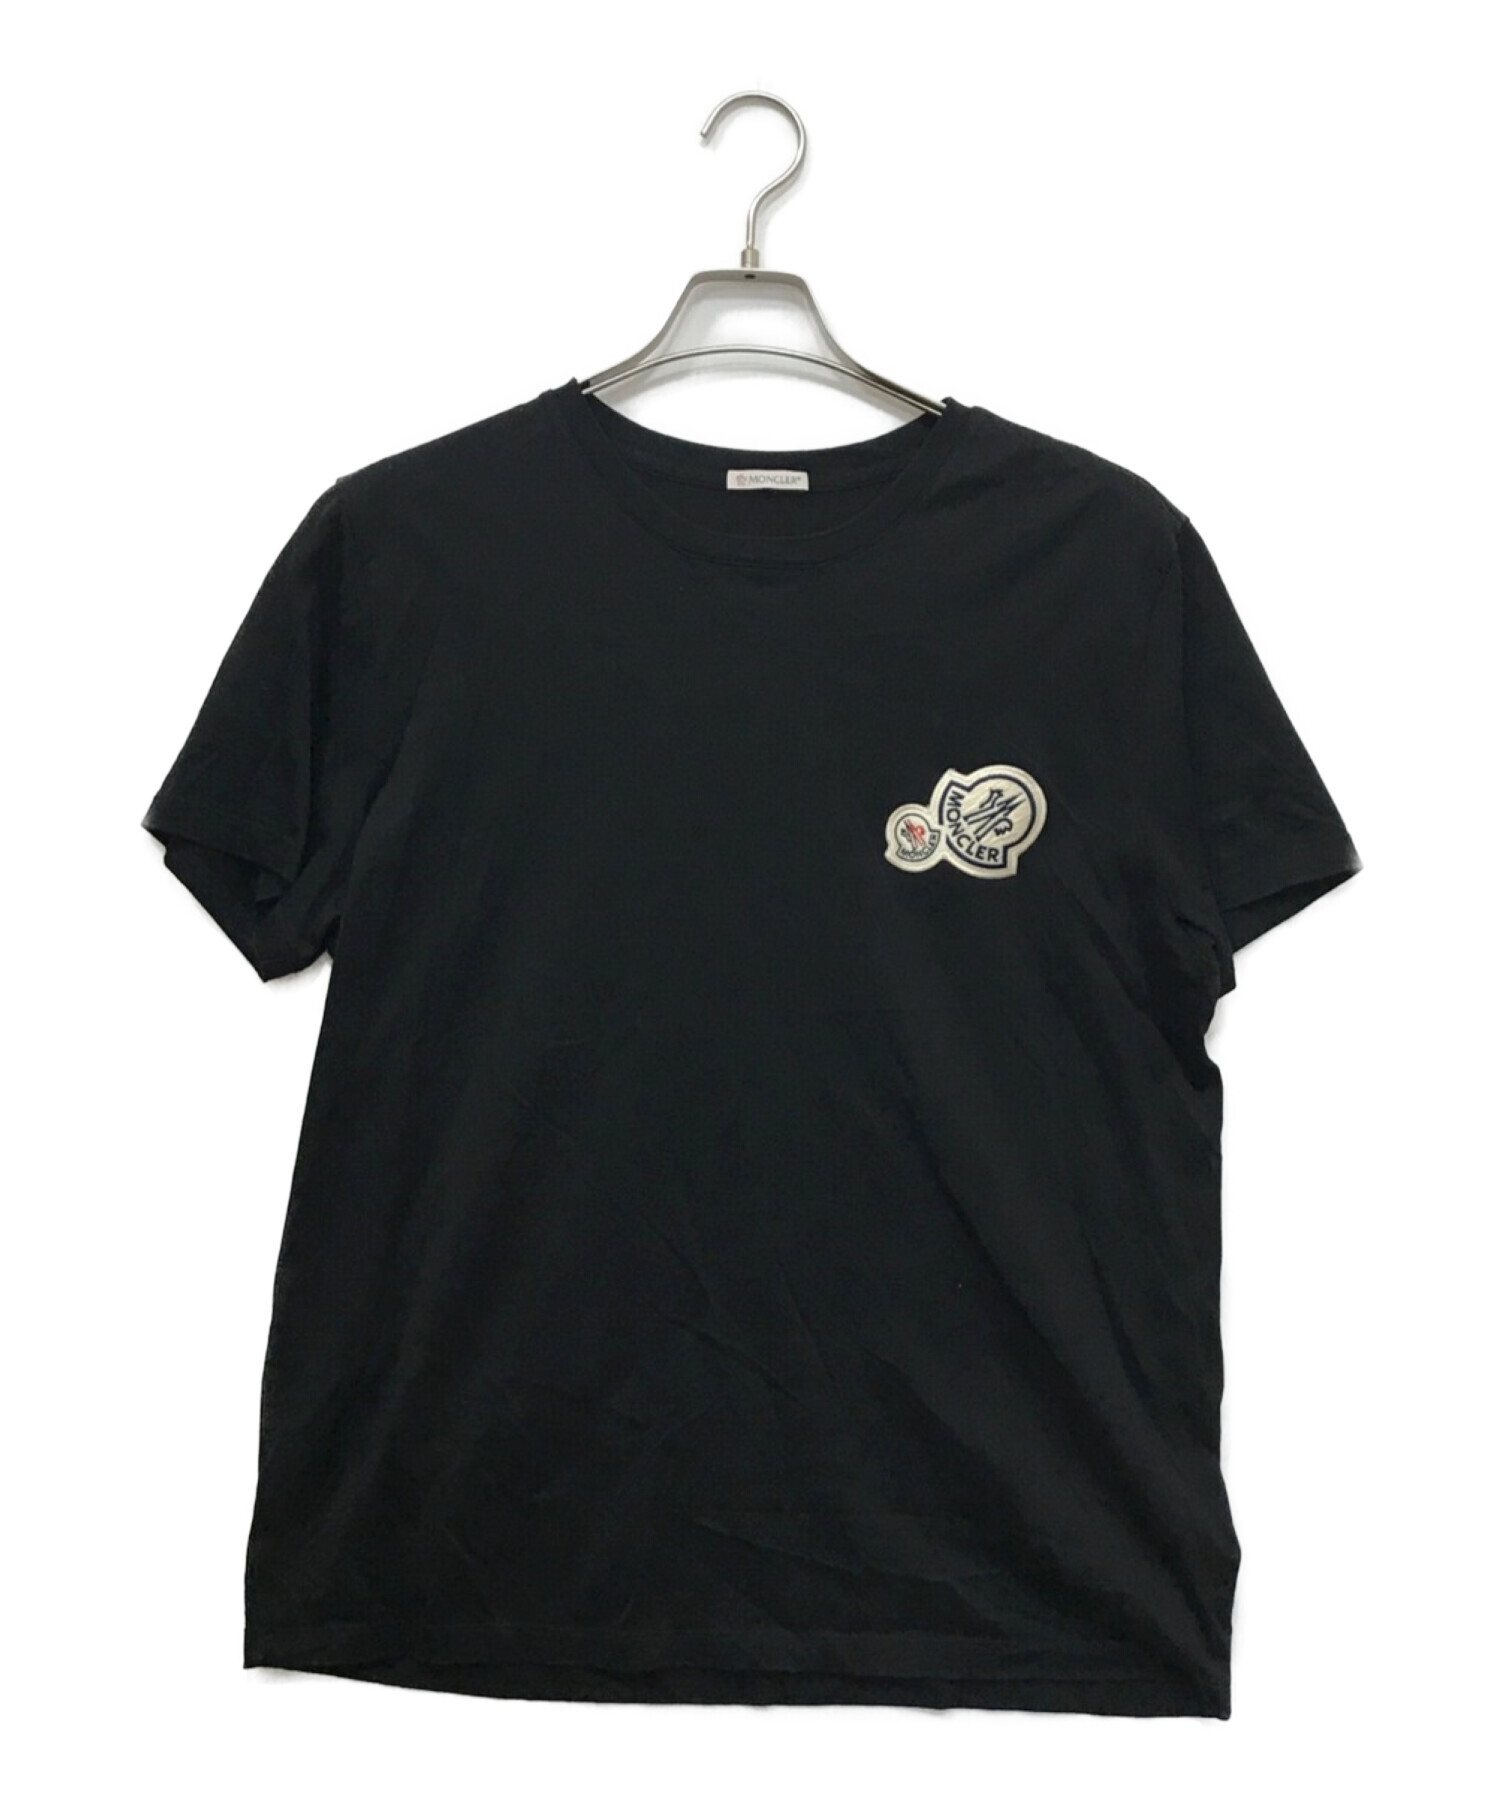 MONCLER (モンクレール) 2連ロゴワッペンTシャツ ブラック サイズ:L